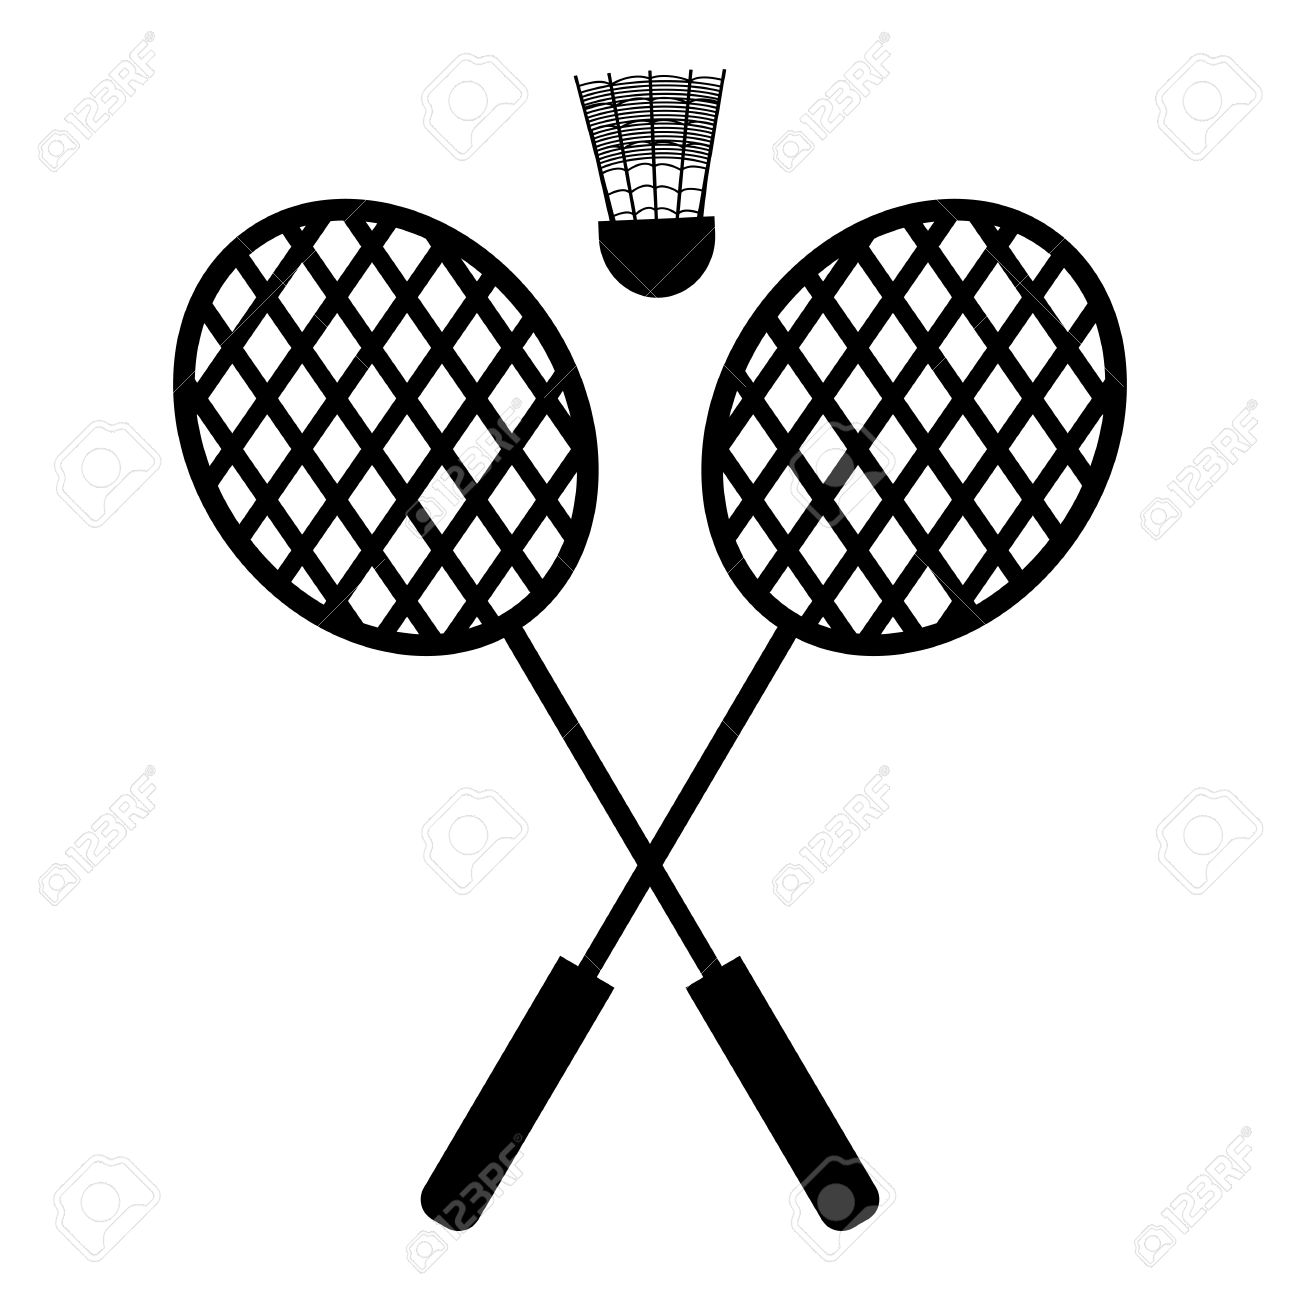 Badminton cliparts free.